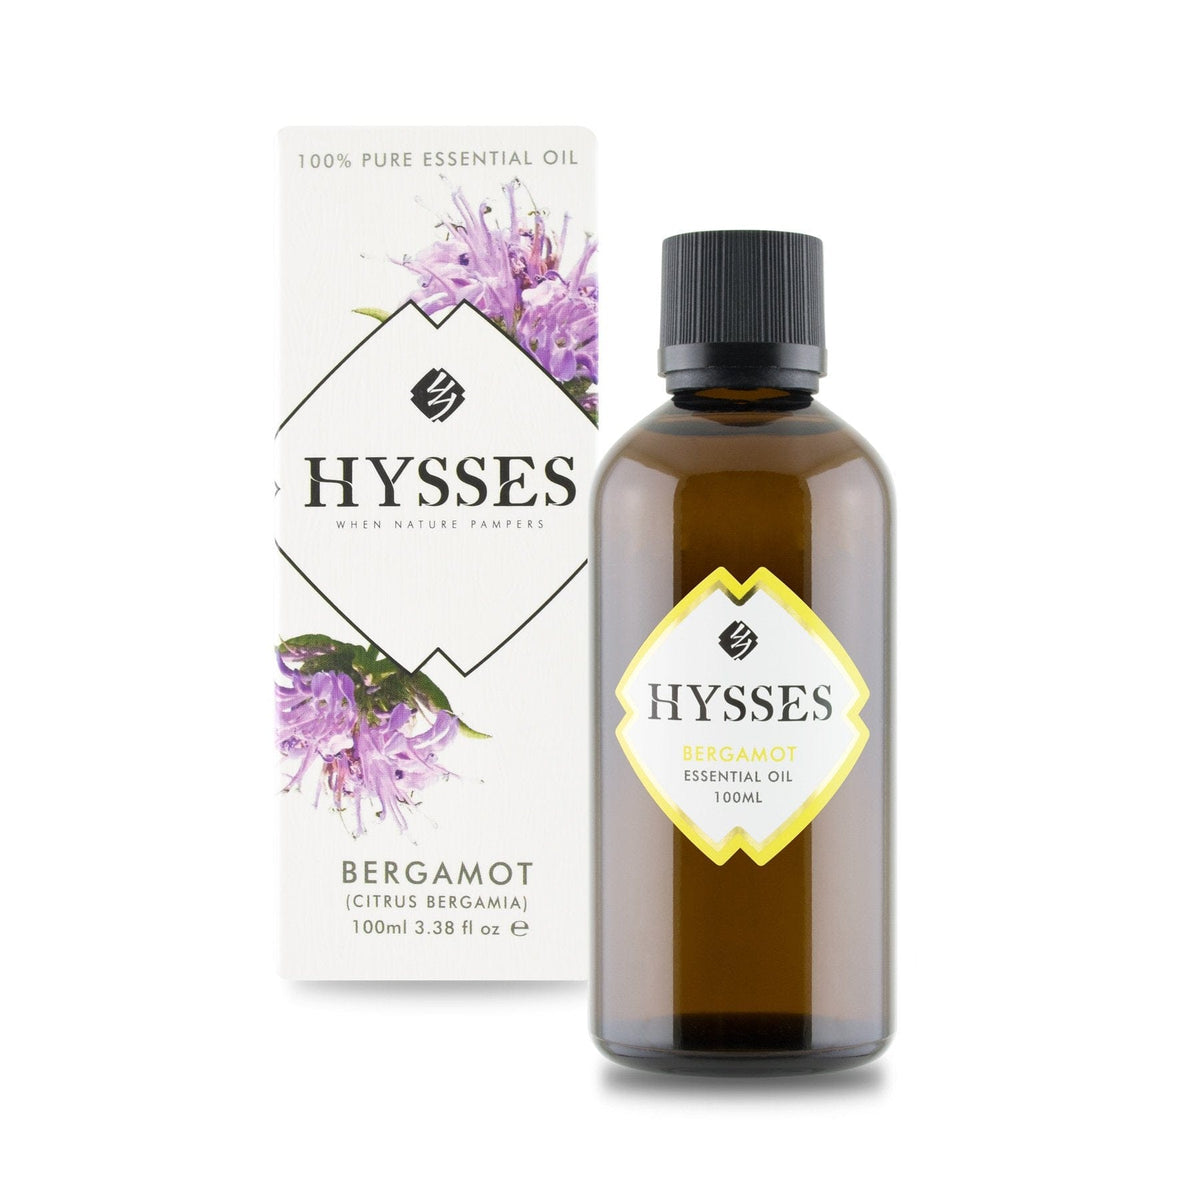 Hysses Essential Oil 100ml Essential Oil Bergamot